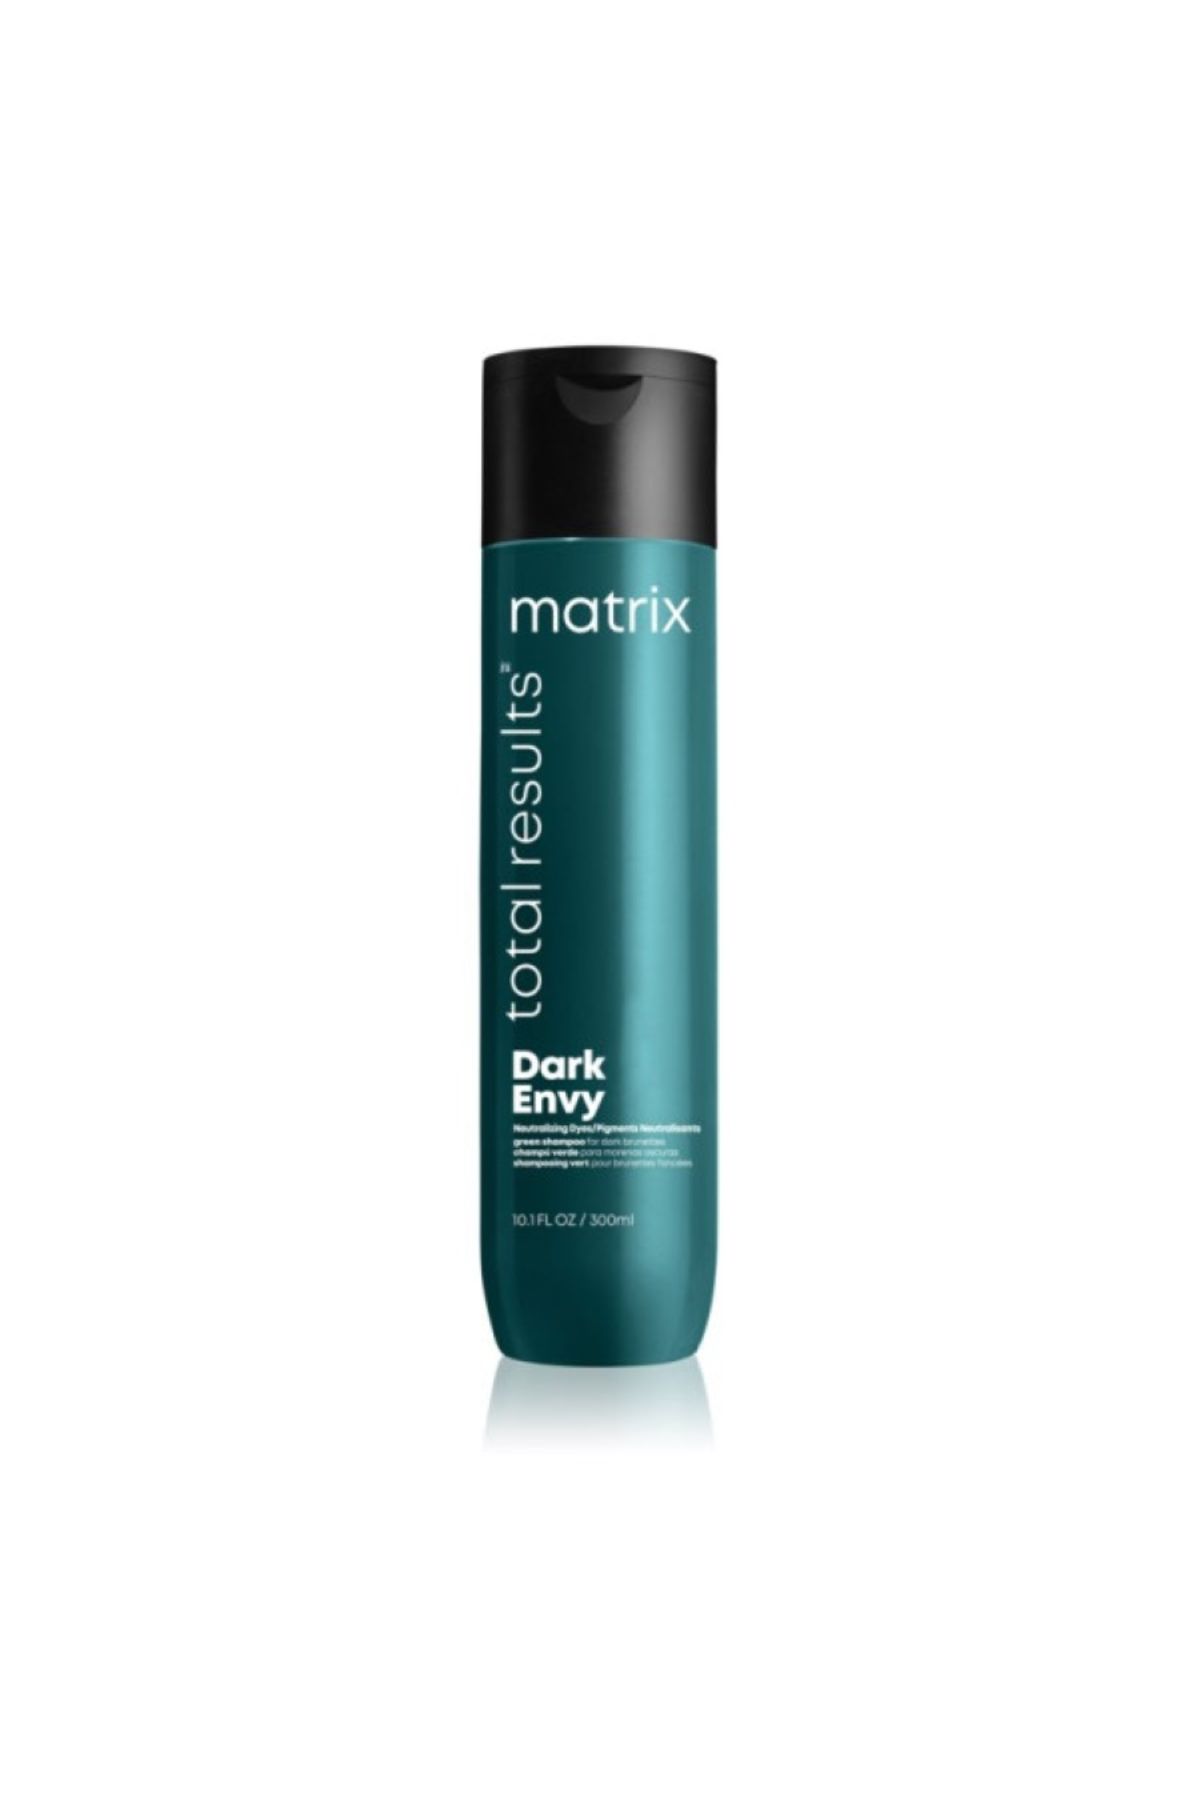 Matrix Total Results Darkenvy Koyu Saçlar İçin Renk Koruyucu Yeşil Şampuan 300ml SED464641313163362